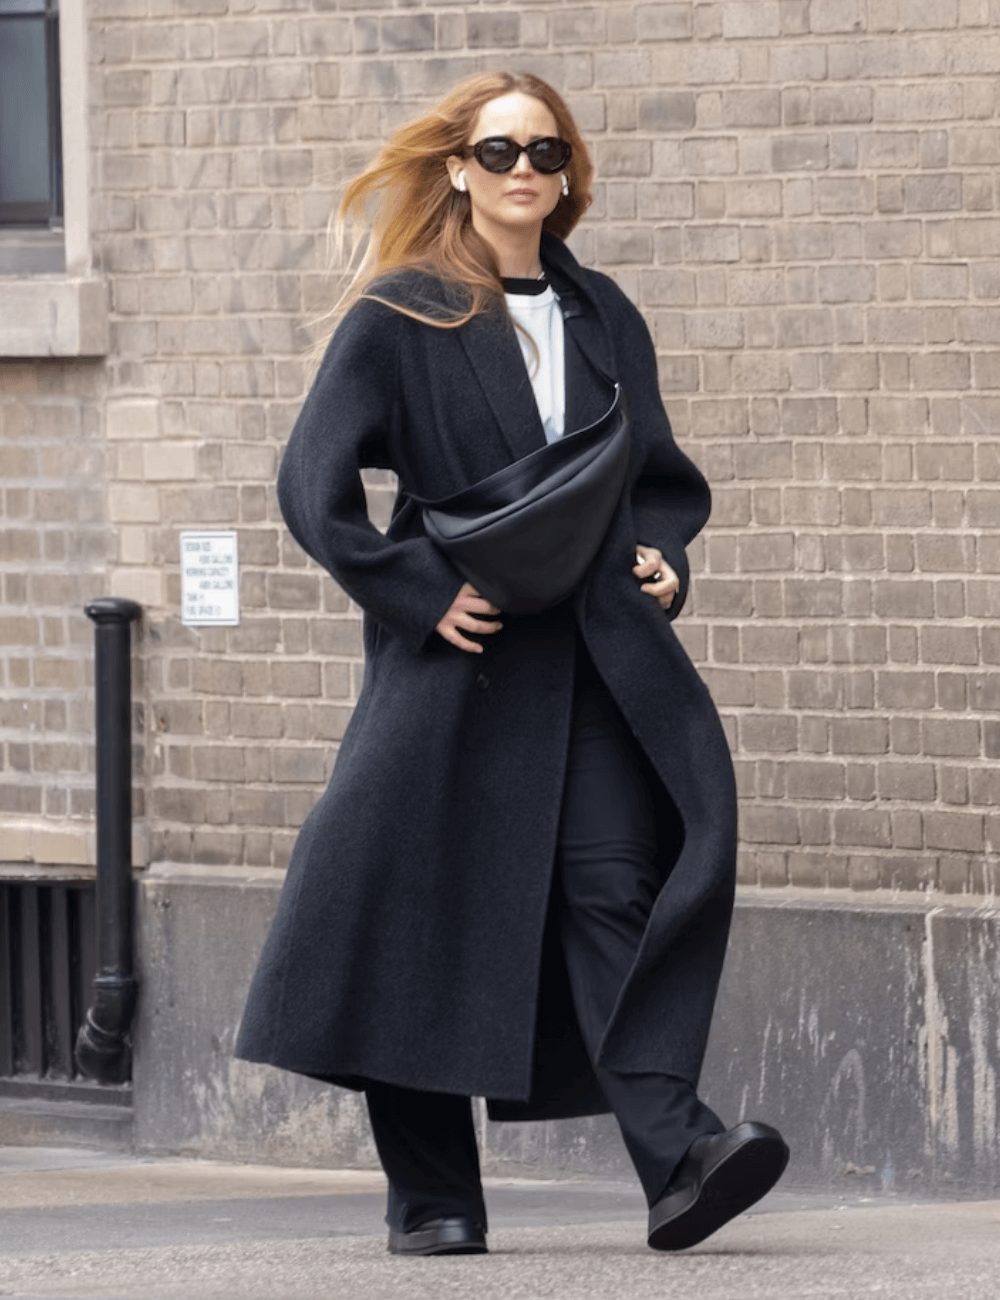 Jennifer Lawrence - calça preta, sobretudo longo preto, óculos de sol e tênis preto - Jennifer Lawrence - inverno - mulher loira andando na rua usando óculos de sol - https://stealthelook.com.br